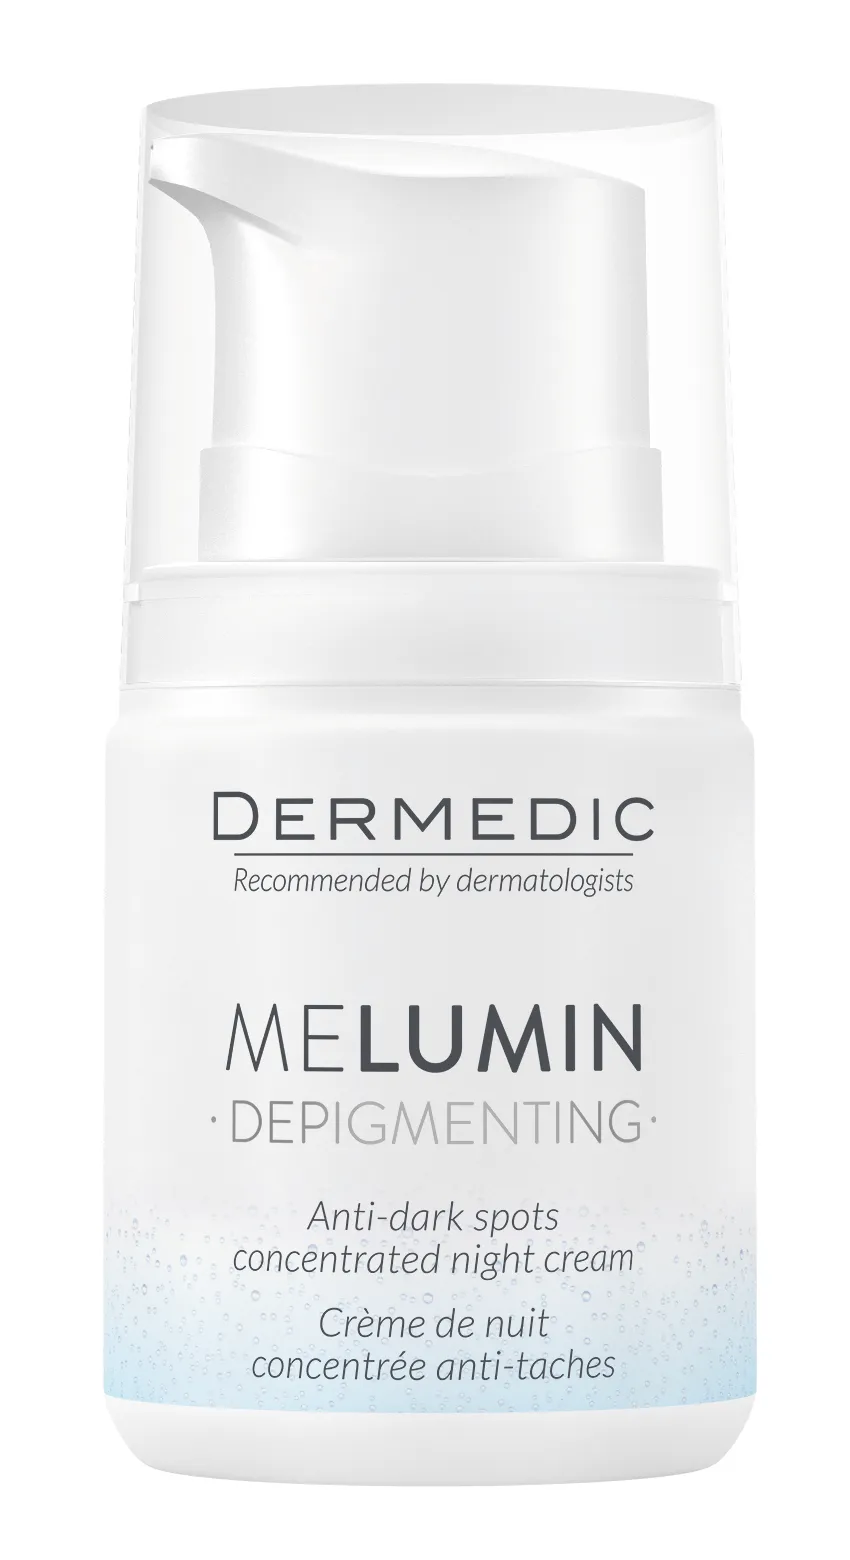 Dermedic Melumin Depigmenting, krem-koncentrat przeciw przebarwieniom na noc, 55 g